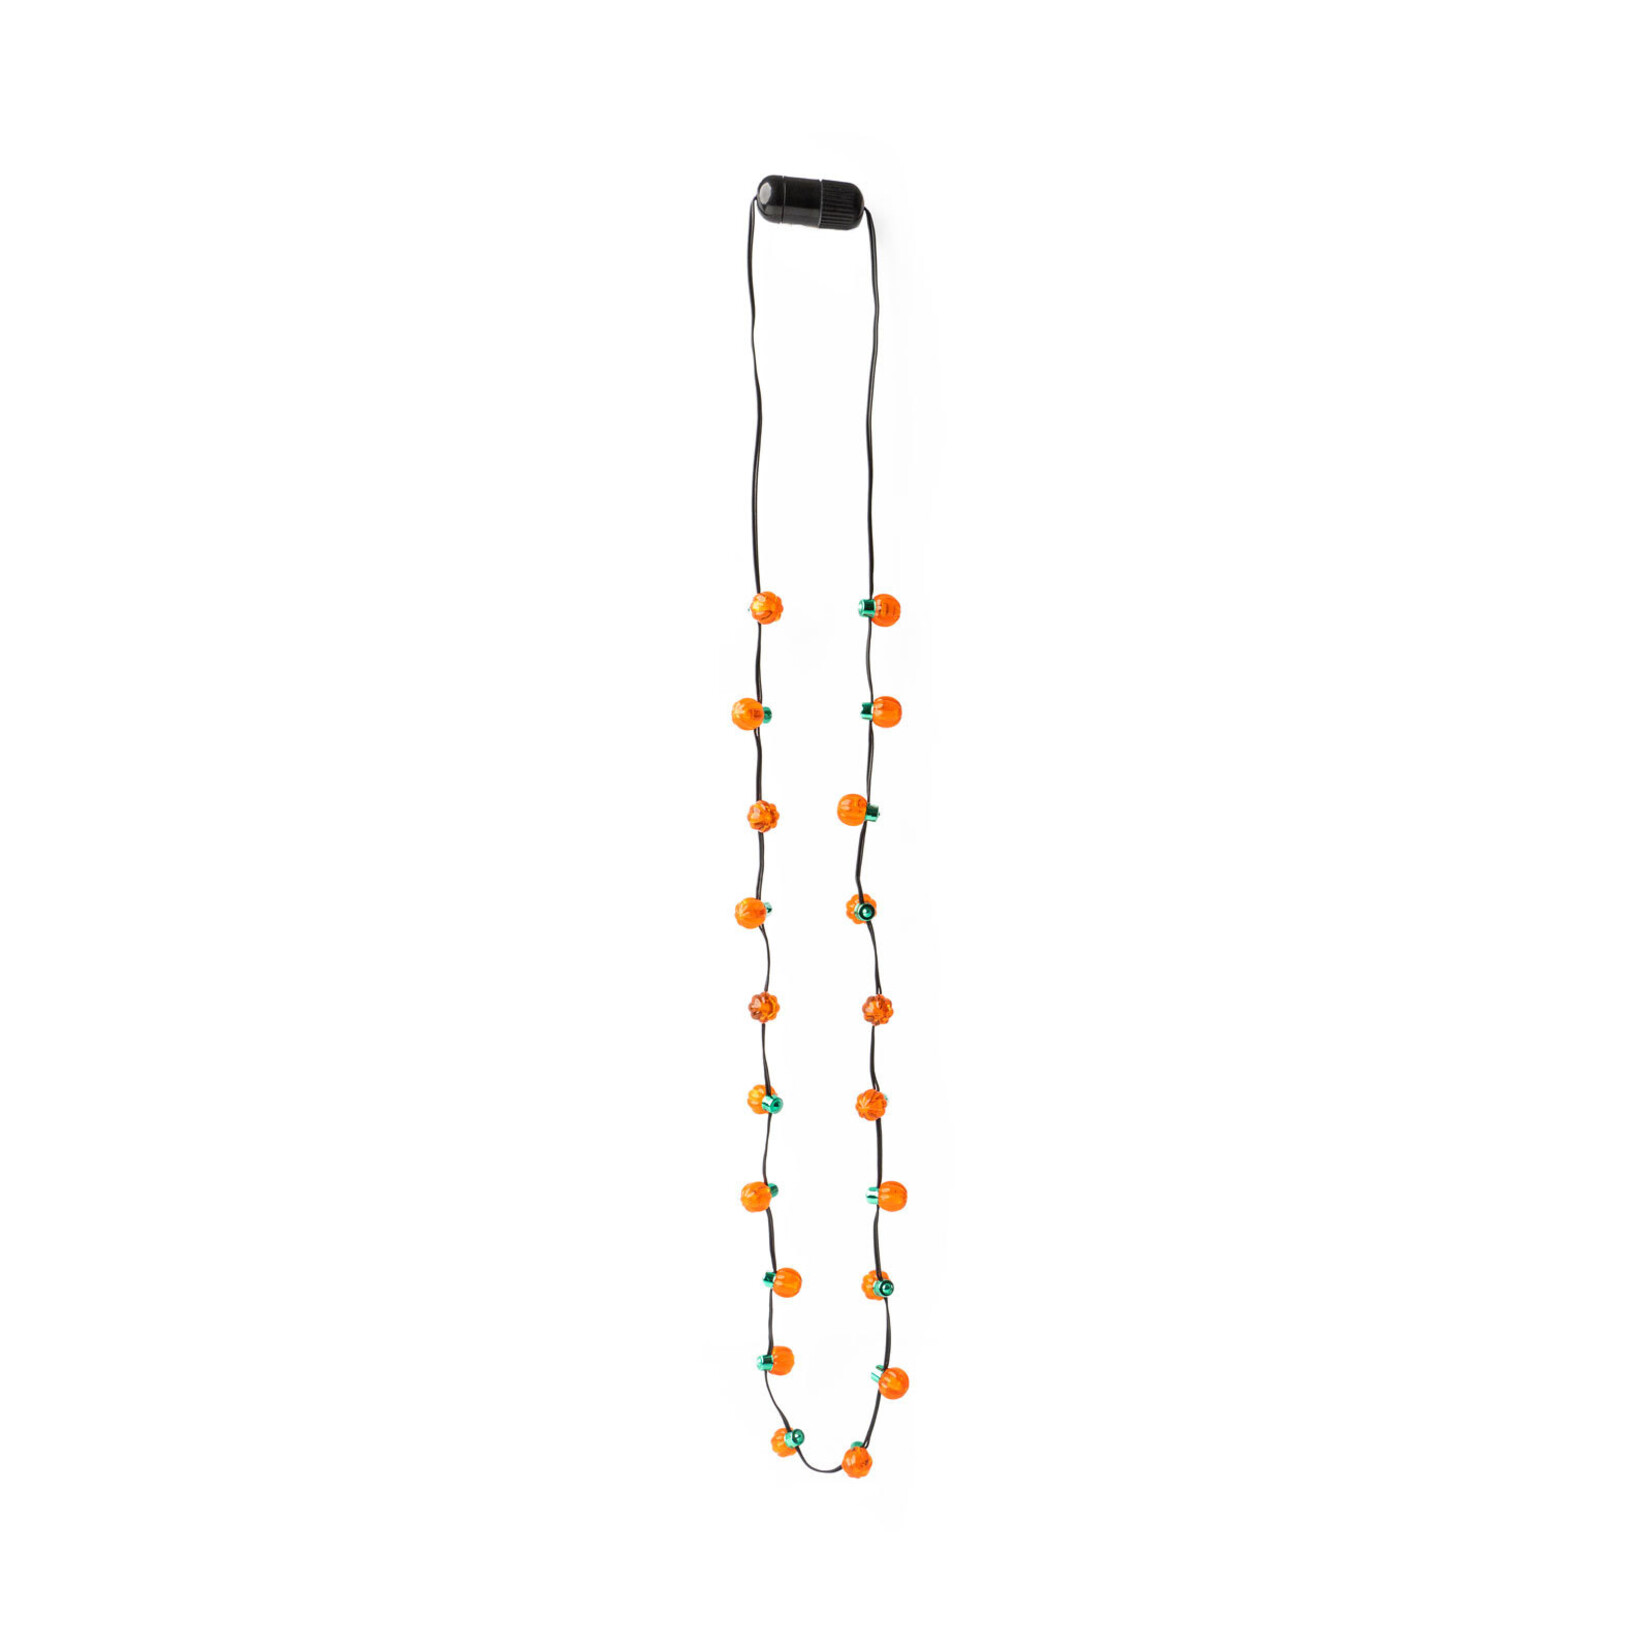 DM Merchandising Lotsa Light Pumpkin Necklace with 20 lights